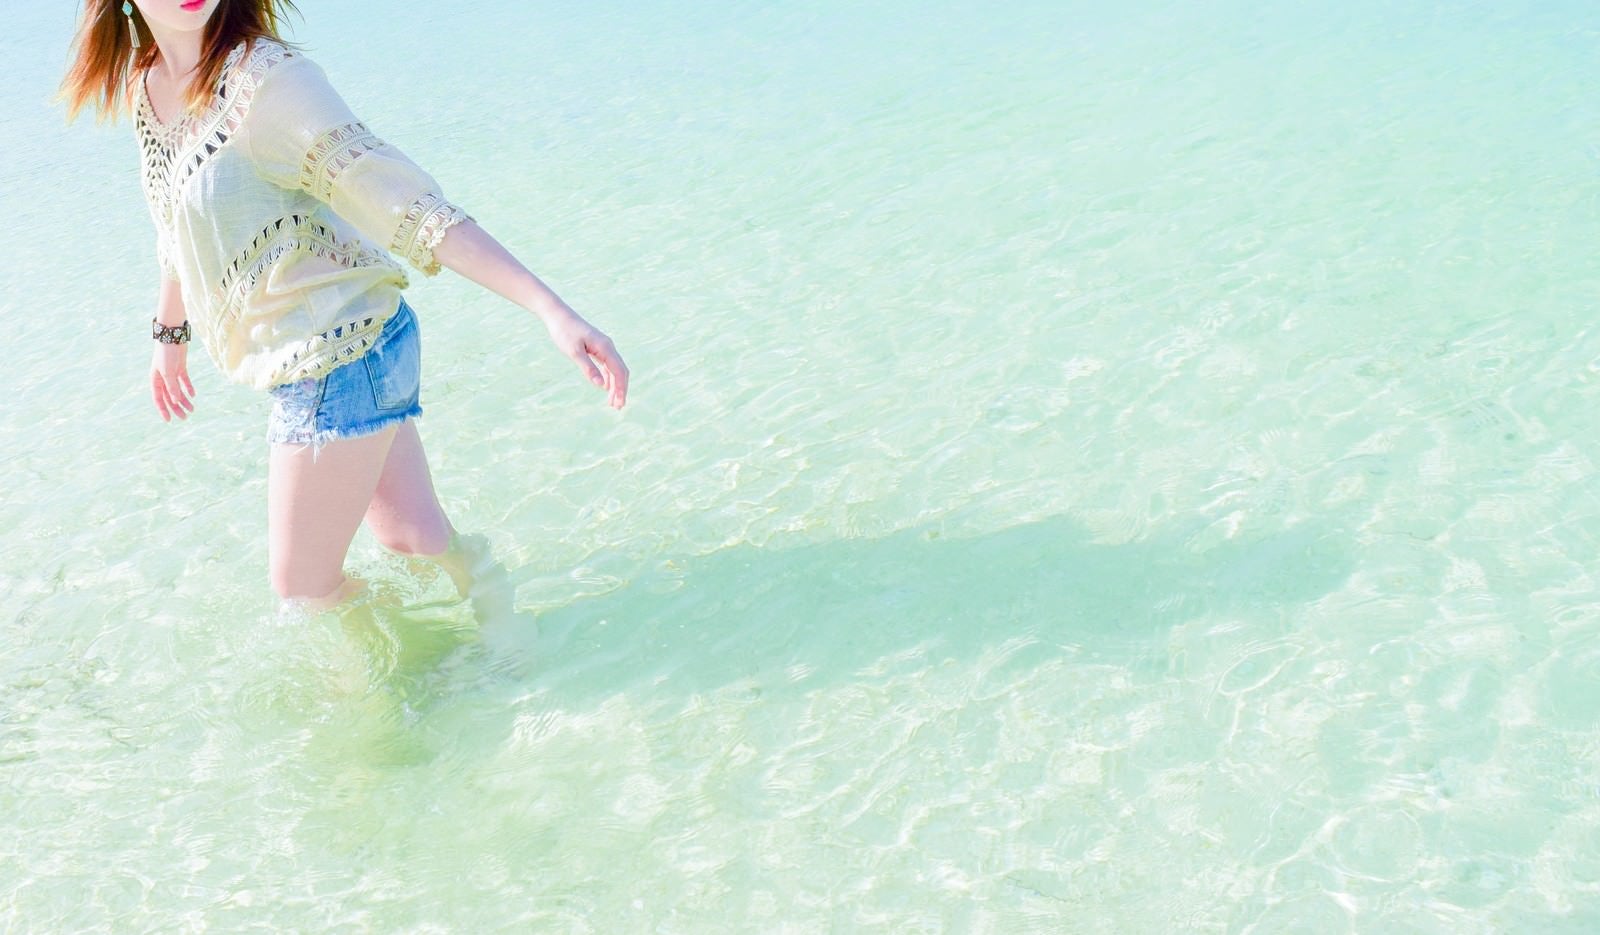 「穏やかな透明な海の浅瀬を歩く女性」の写真